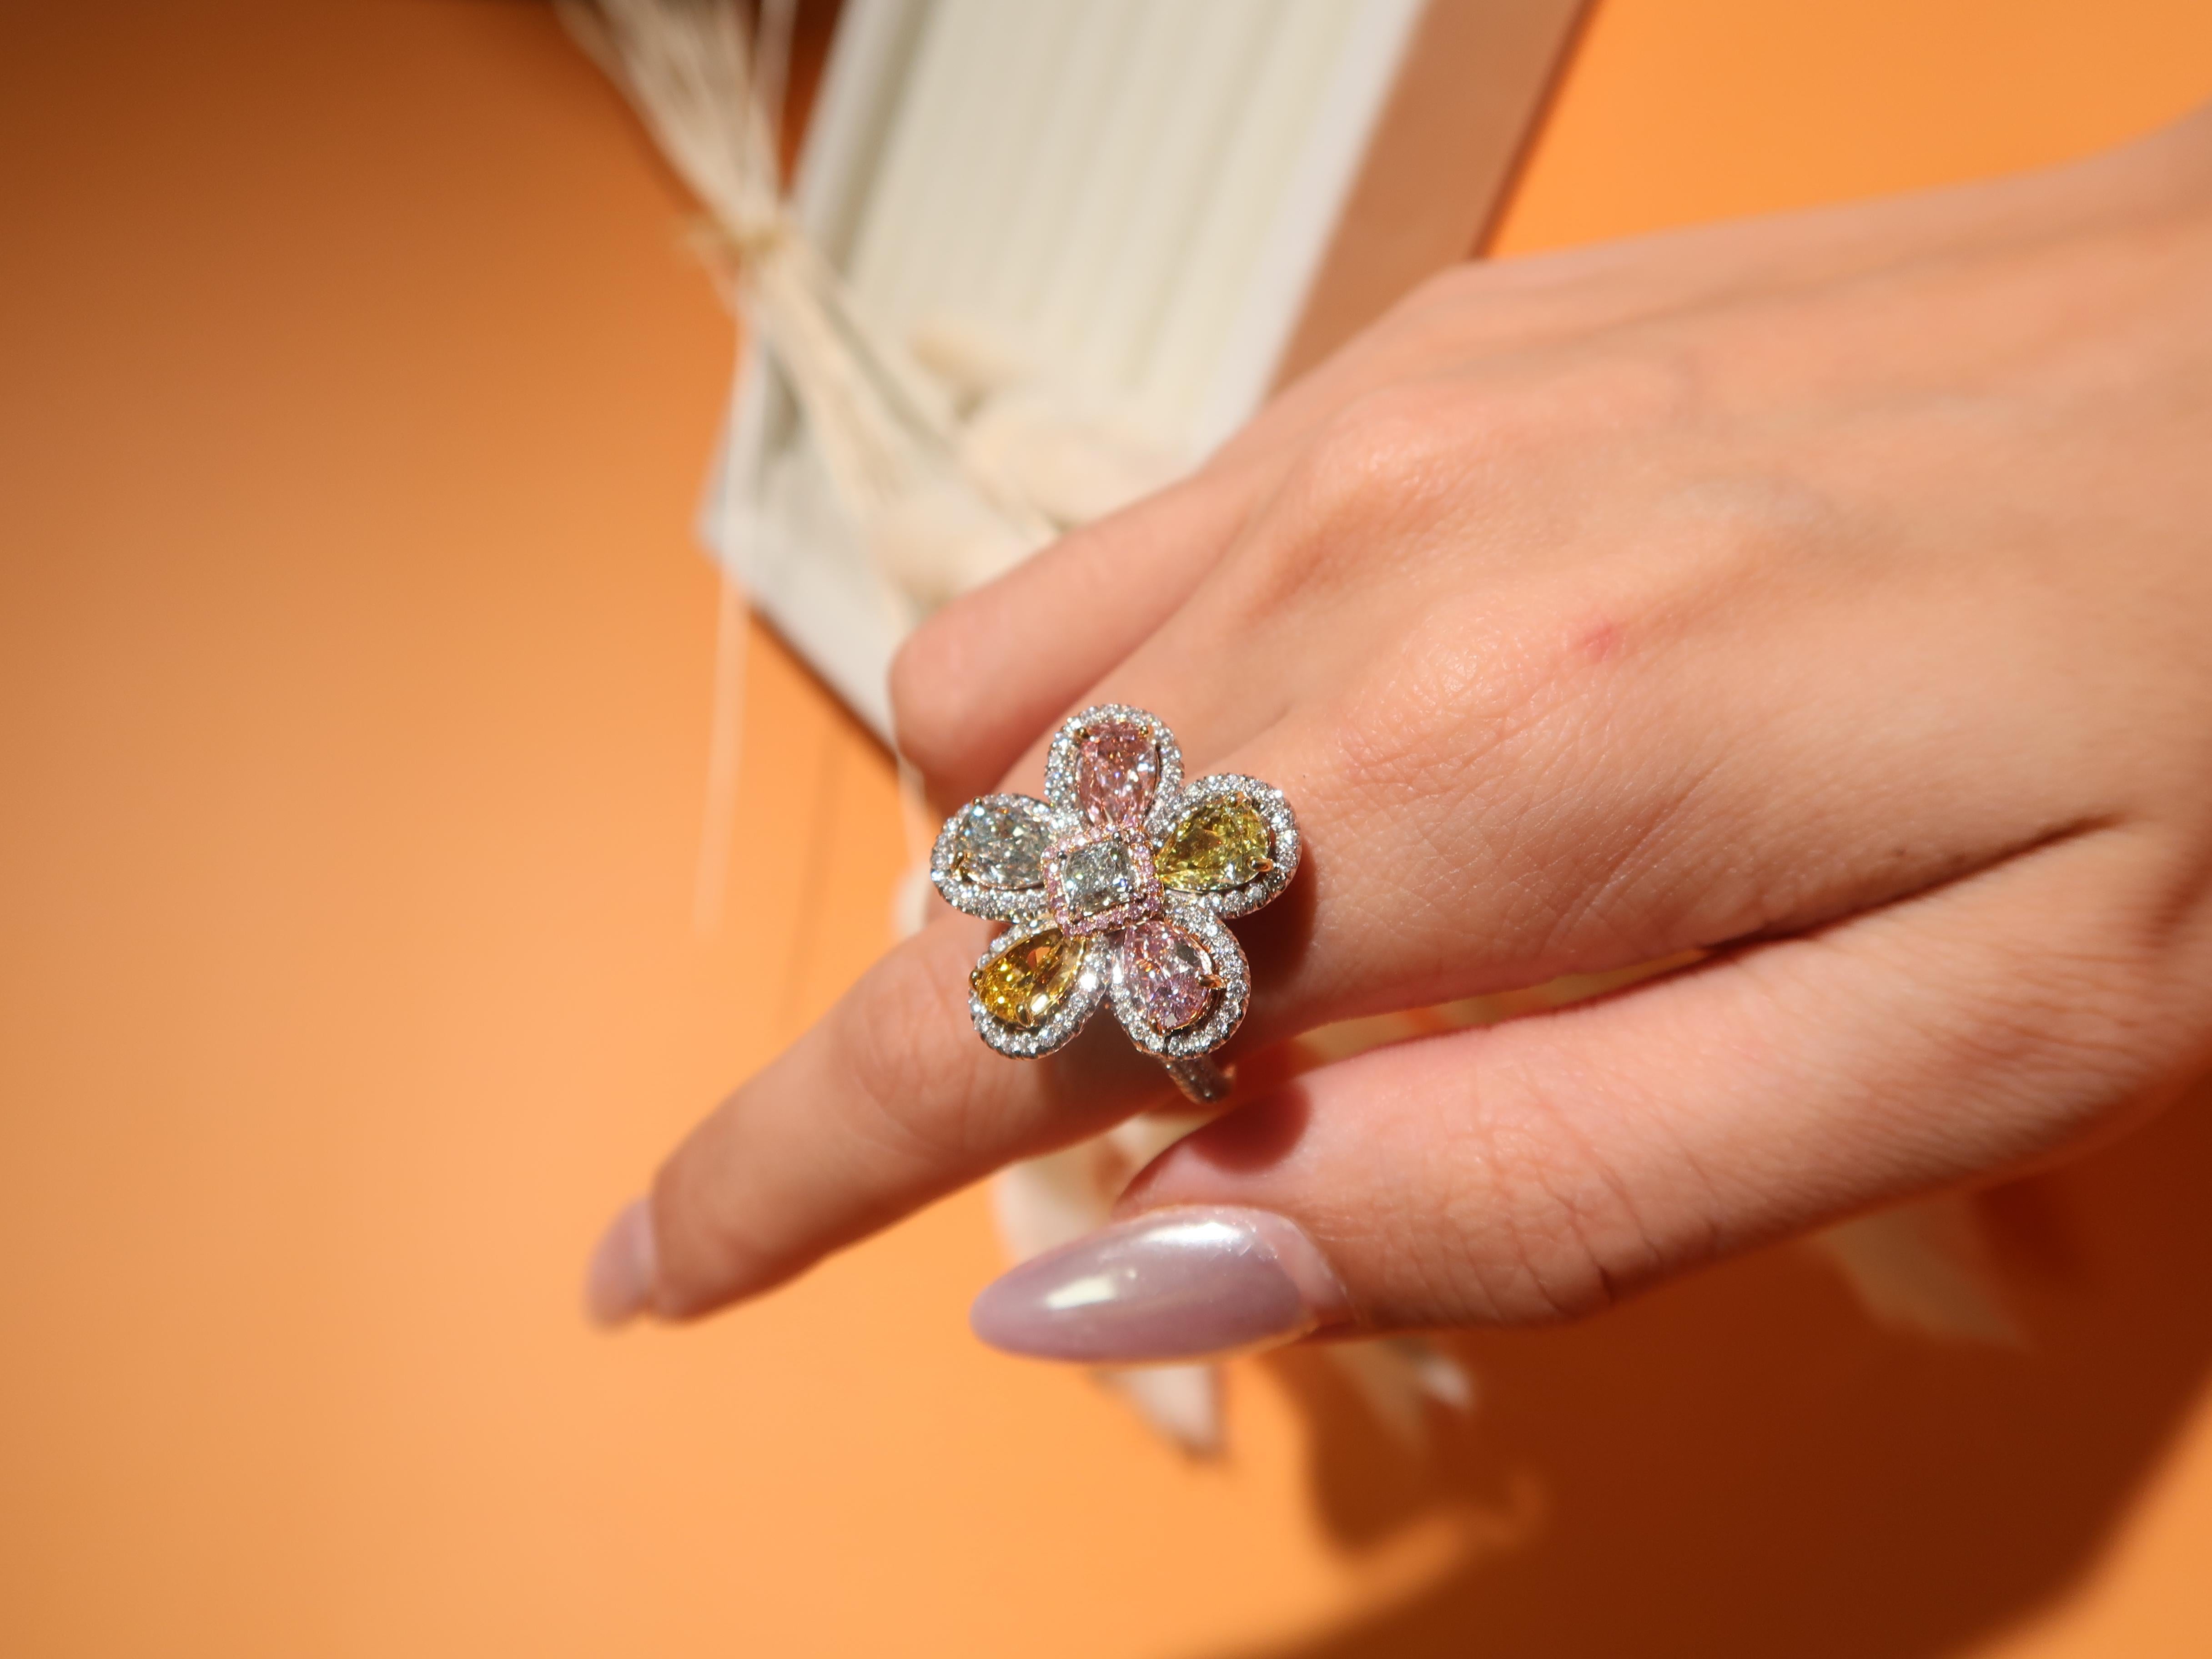 Ein mehrfarbiger floraler Diamantring mit einer lebhaften Anordnung von Diamanten: ein 0,36 Karat grüner kissenförmiger Diamant in der Mitte, umgeben von 20 runden rosa Diamanten mit einem Gewicht von 0,06 Karat. Dieser Ring enthält einen 0,56 Karat